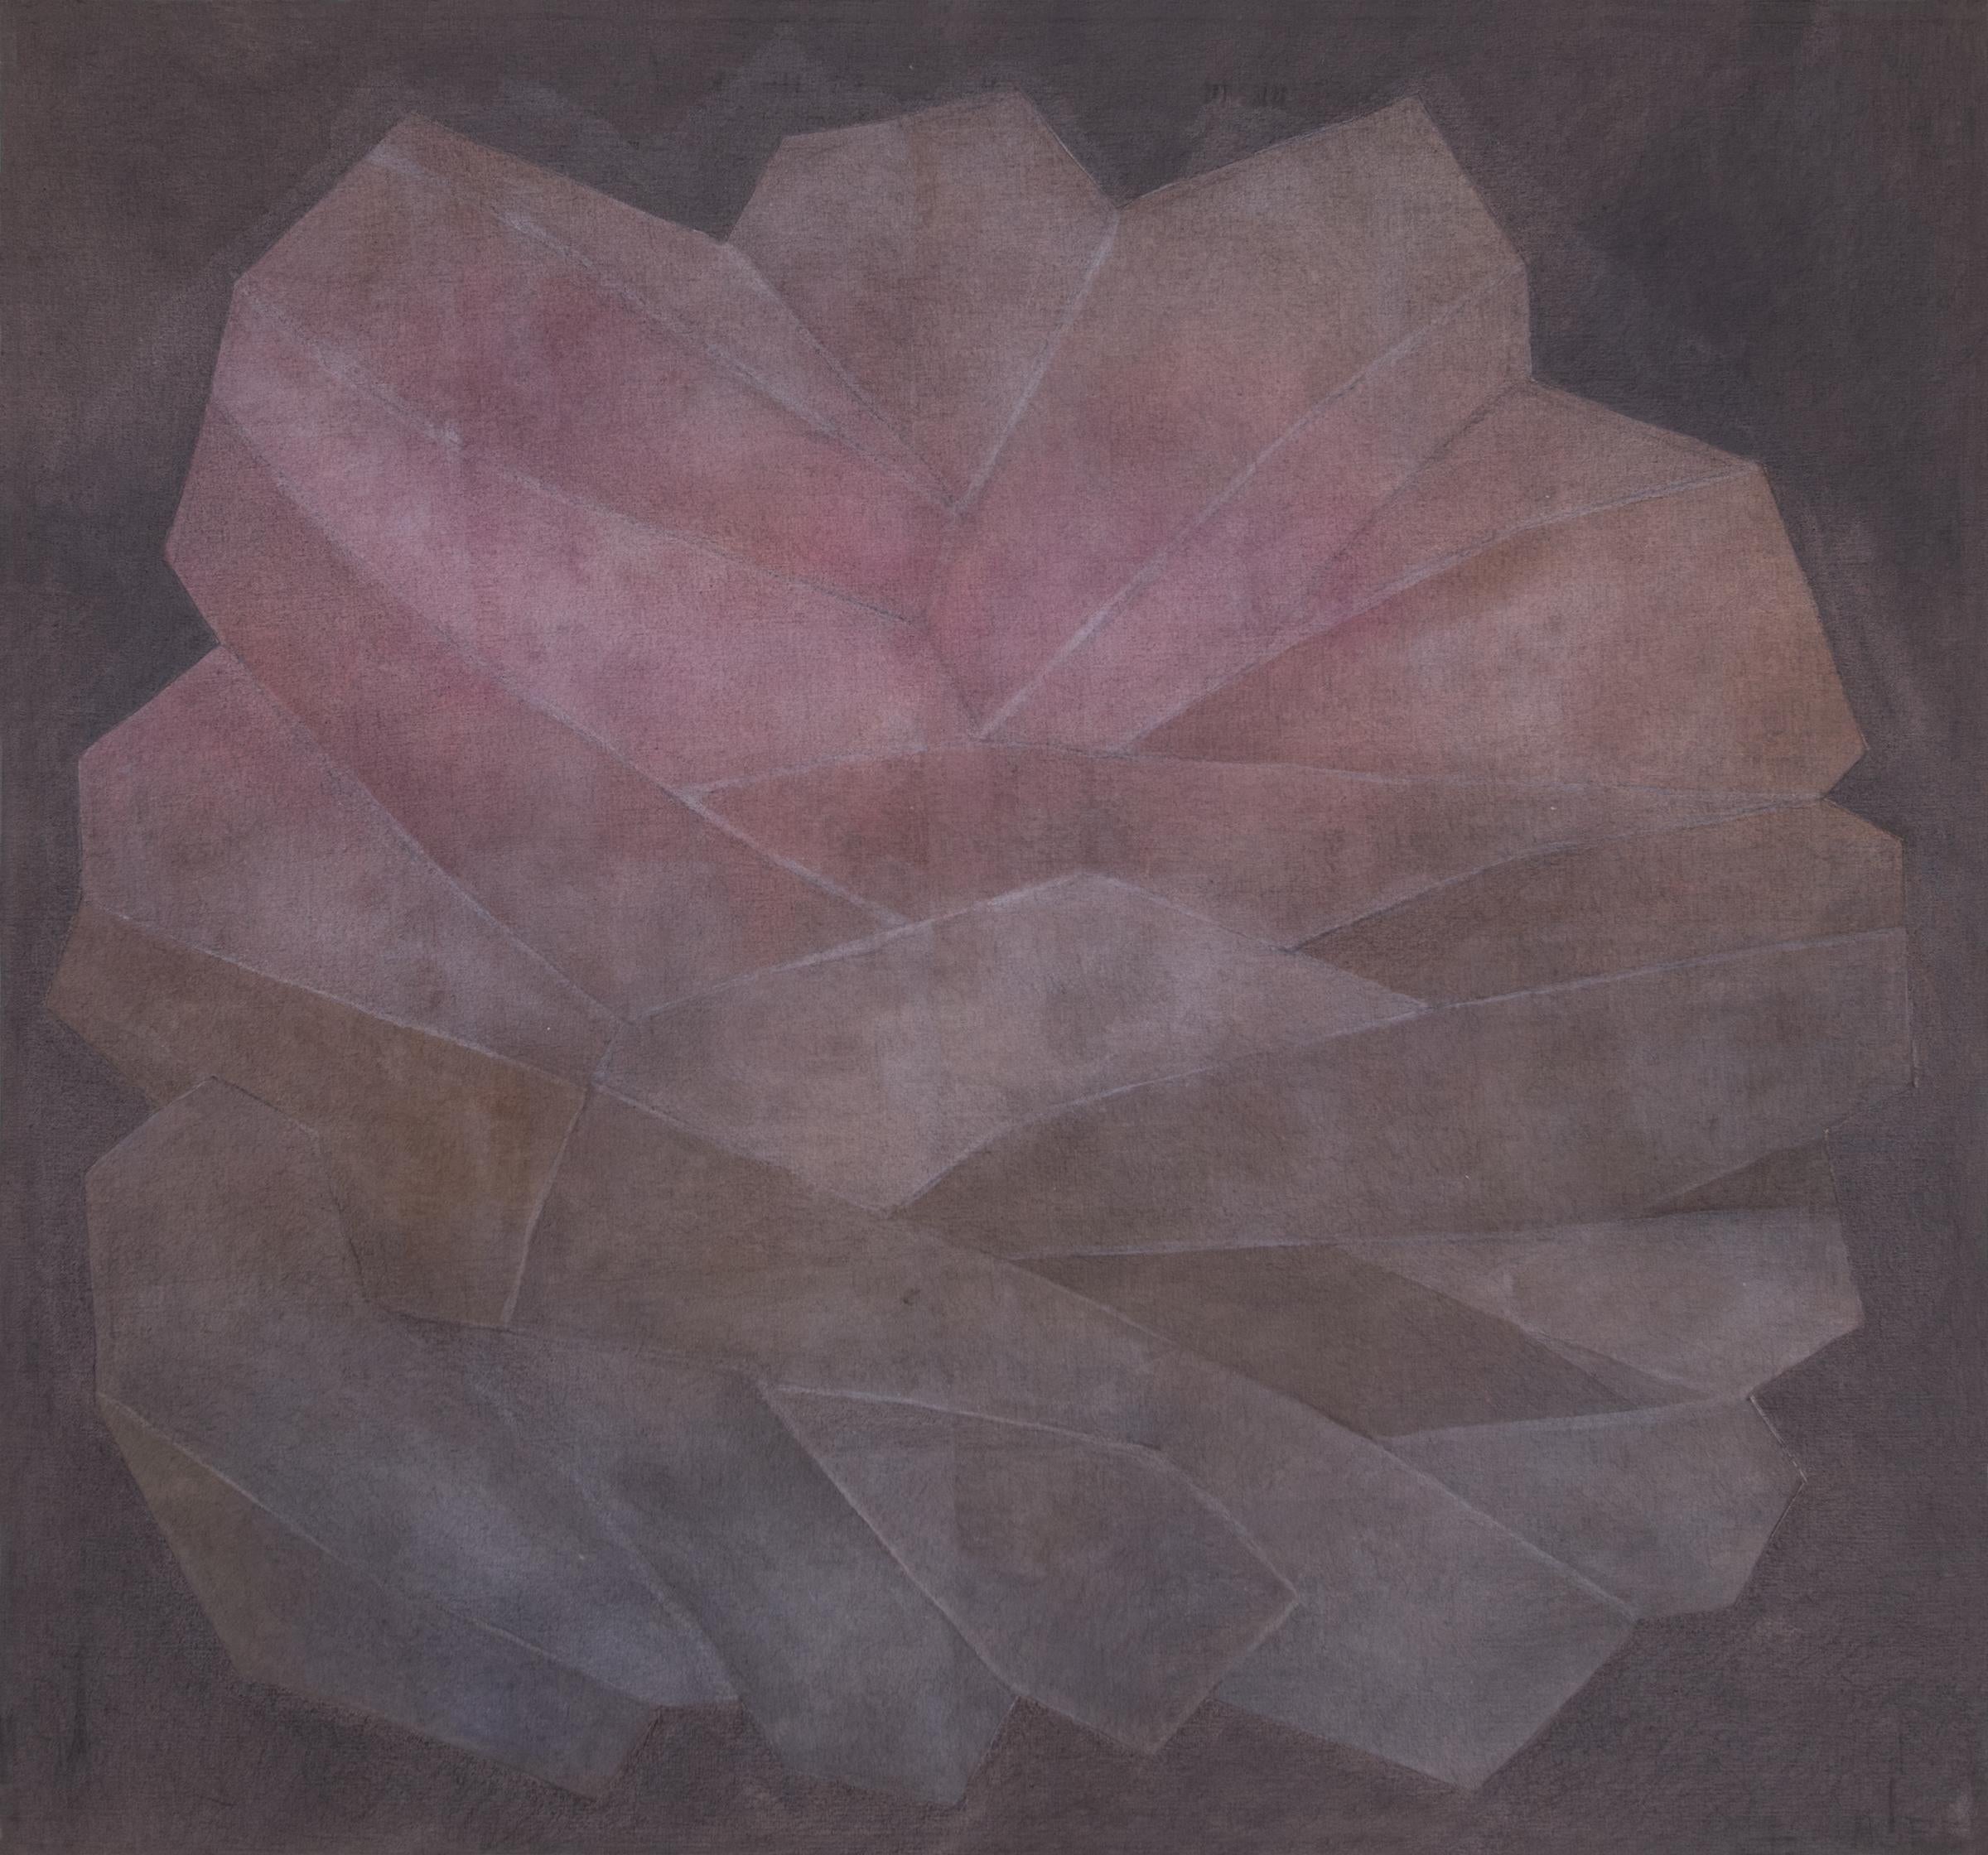 Kristallkristall, Serie #3 Ros, 1960, Abstraktes Collage-Gemälde in Lila und Rosatönen – Painting von Margo Hoff